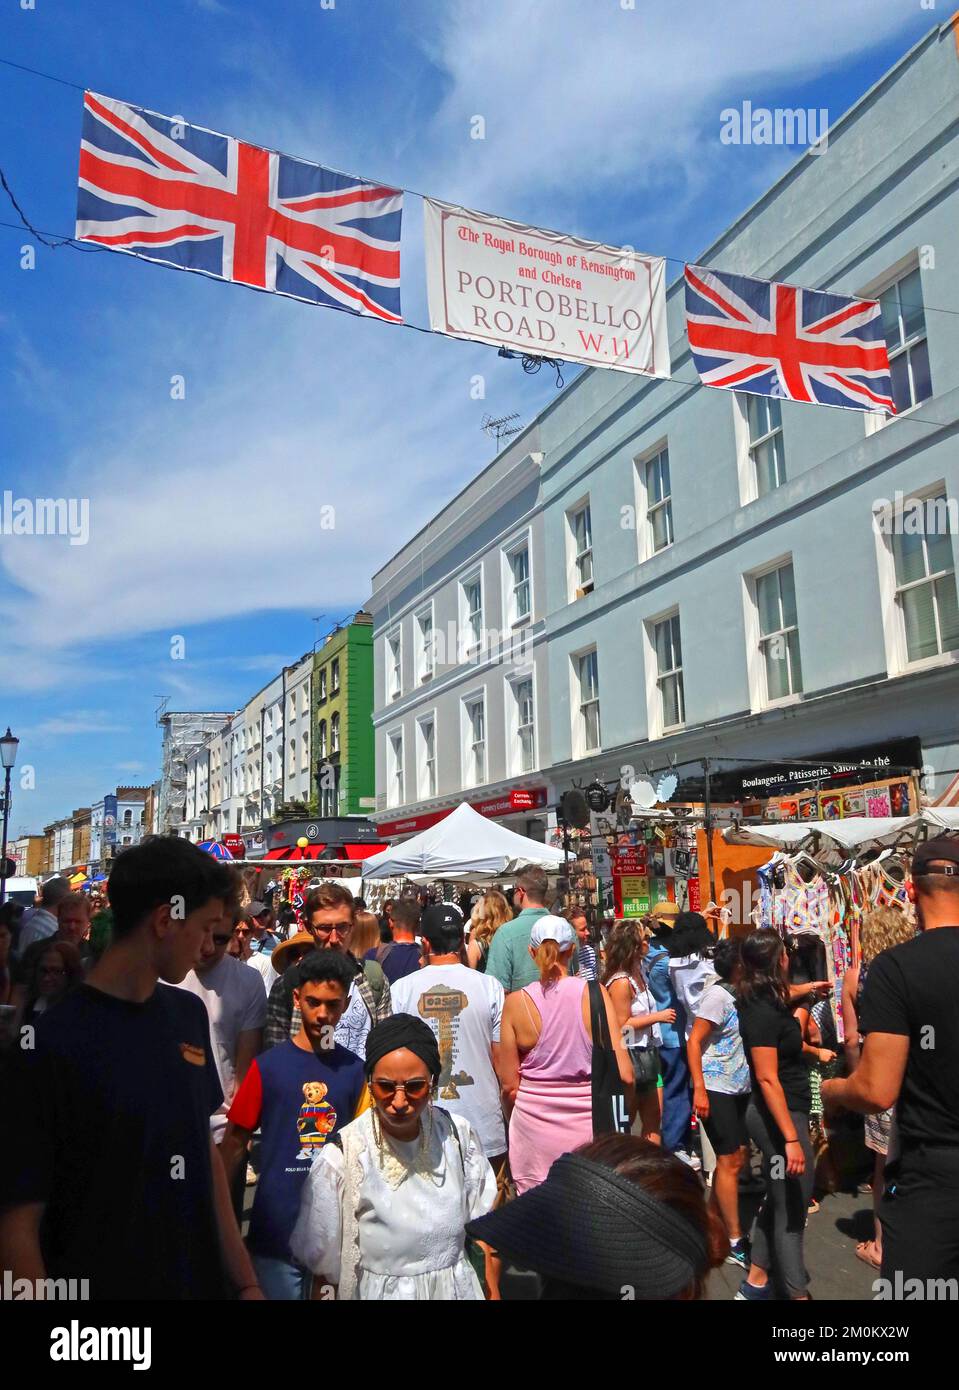 Samedi d'été, marché de Portobello Road, Notting Hill, Londres, Angleterre, Royaume-Uni, W11 1LA Banque D'Images